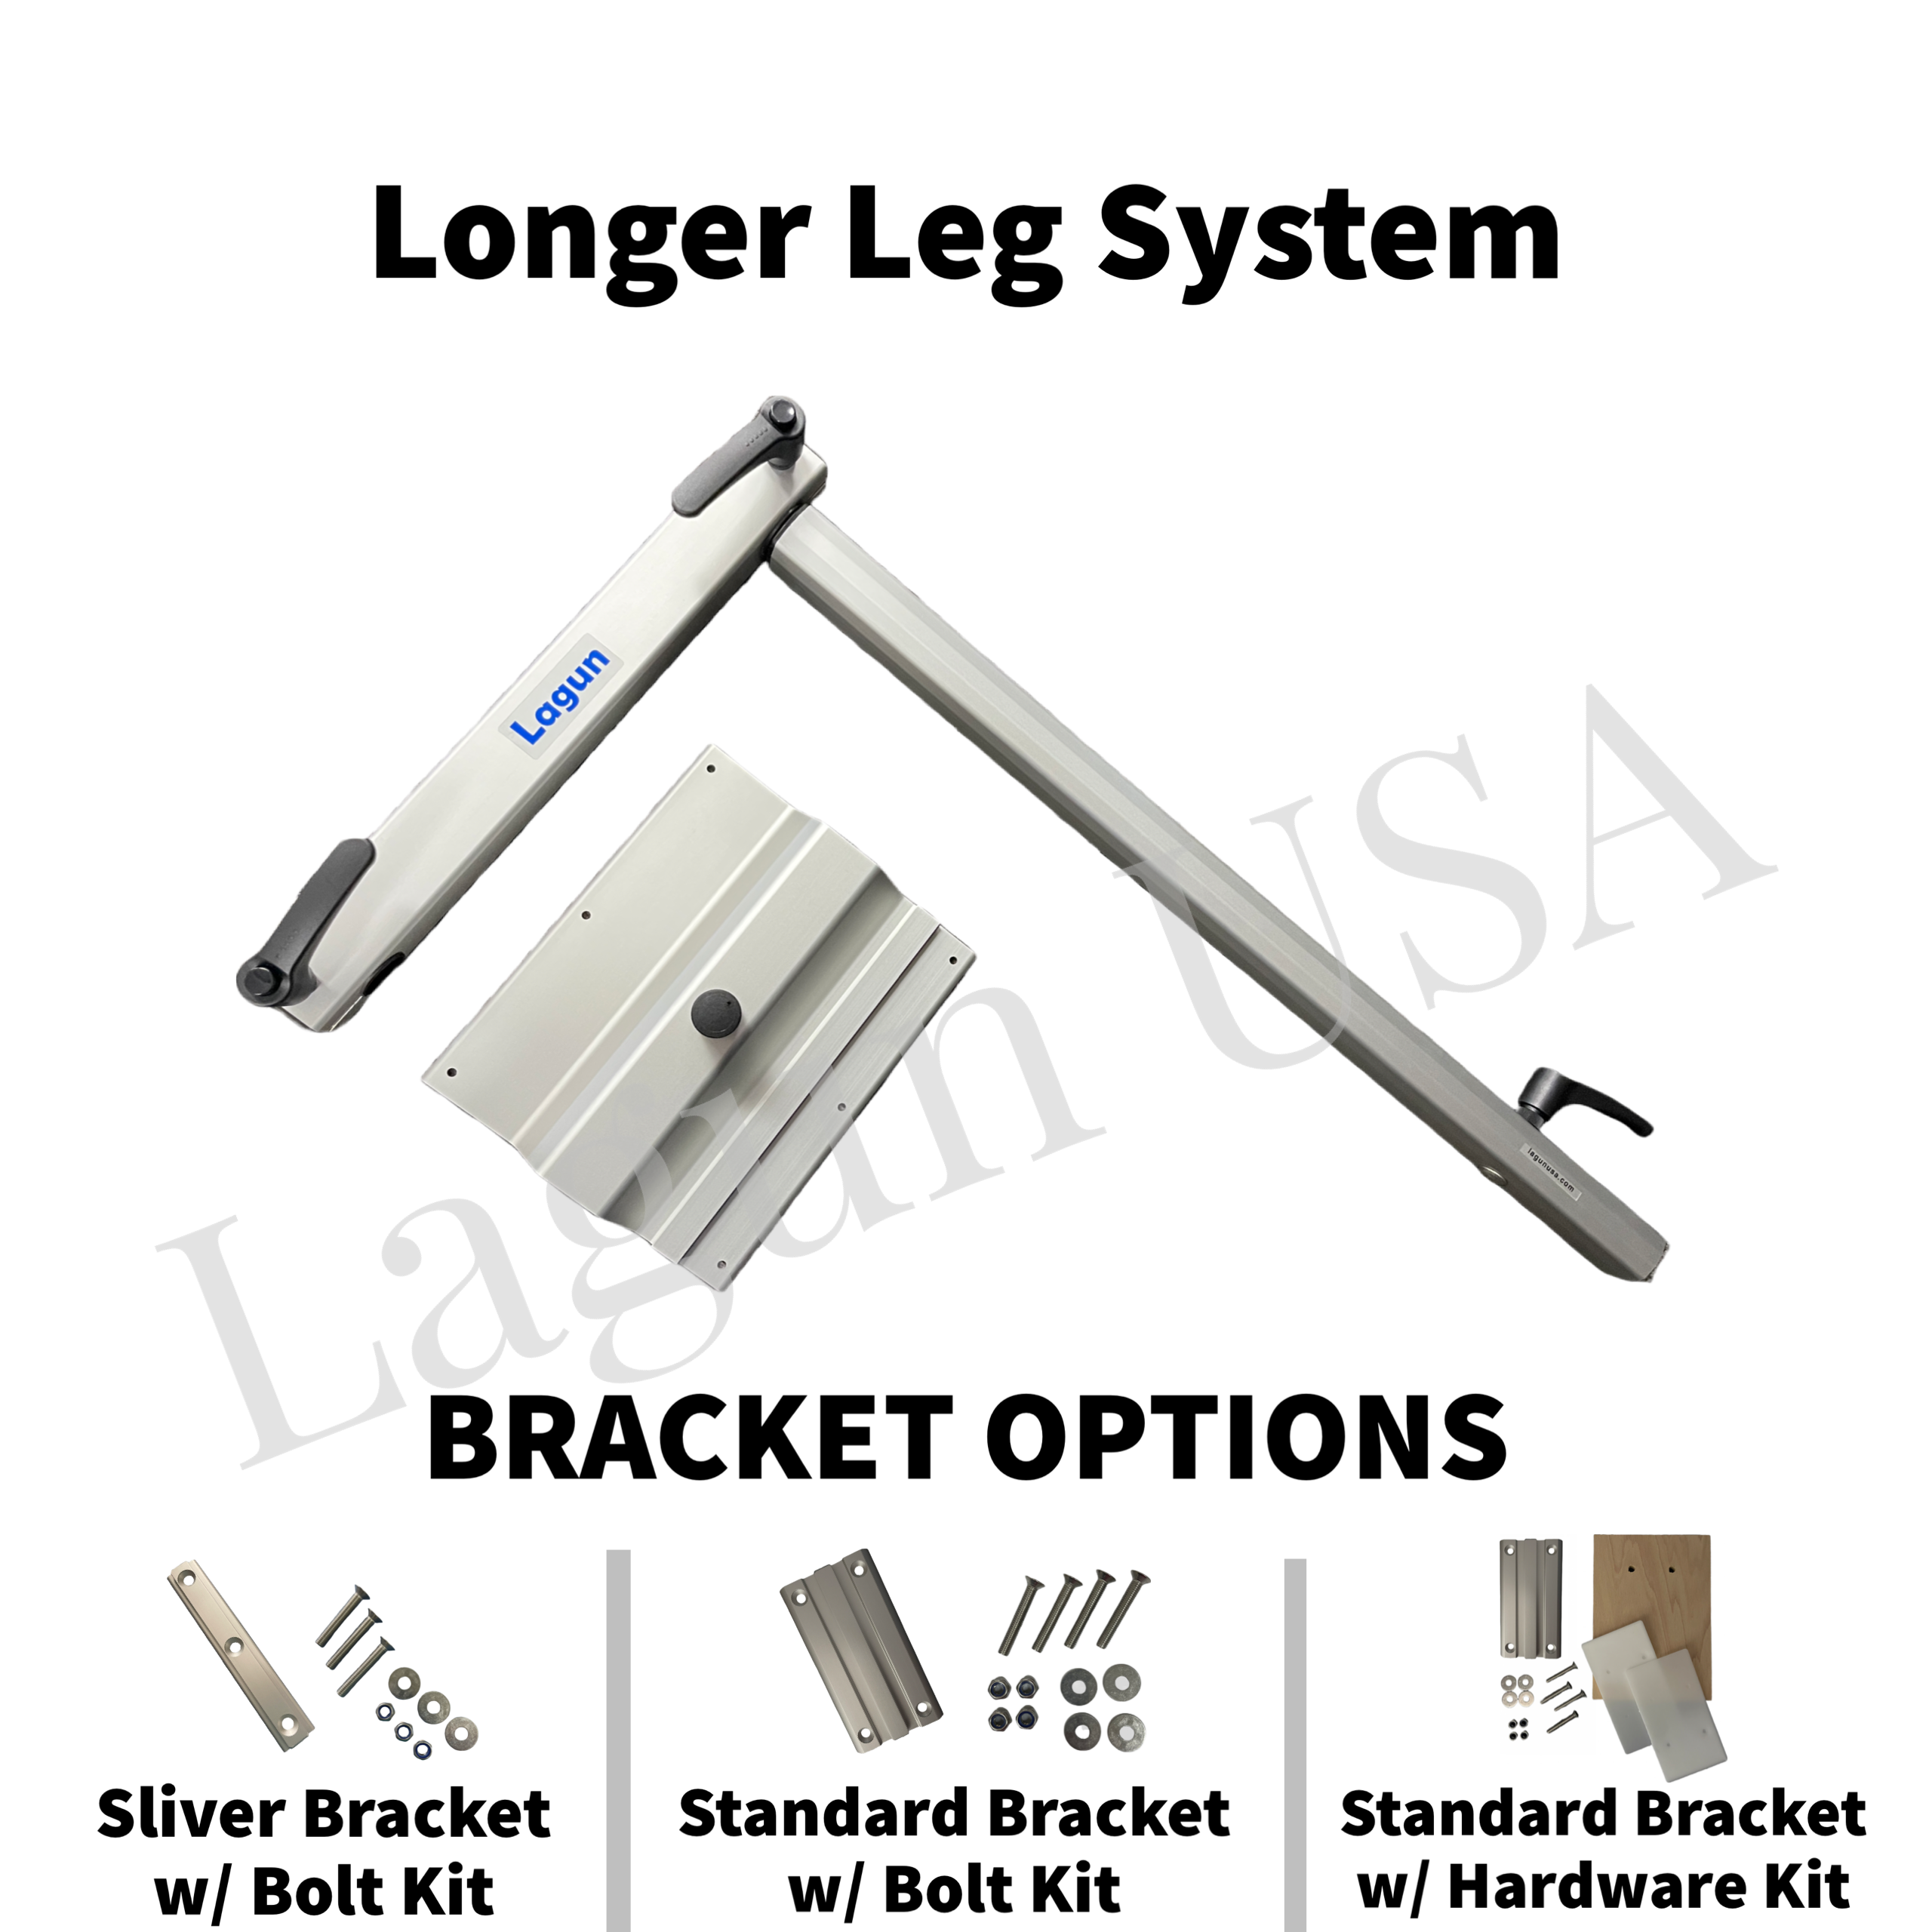 Longer Leg System